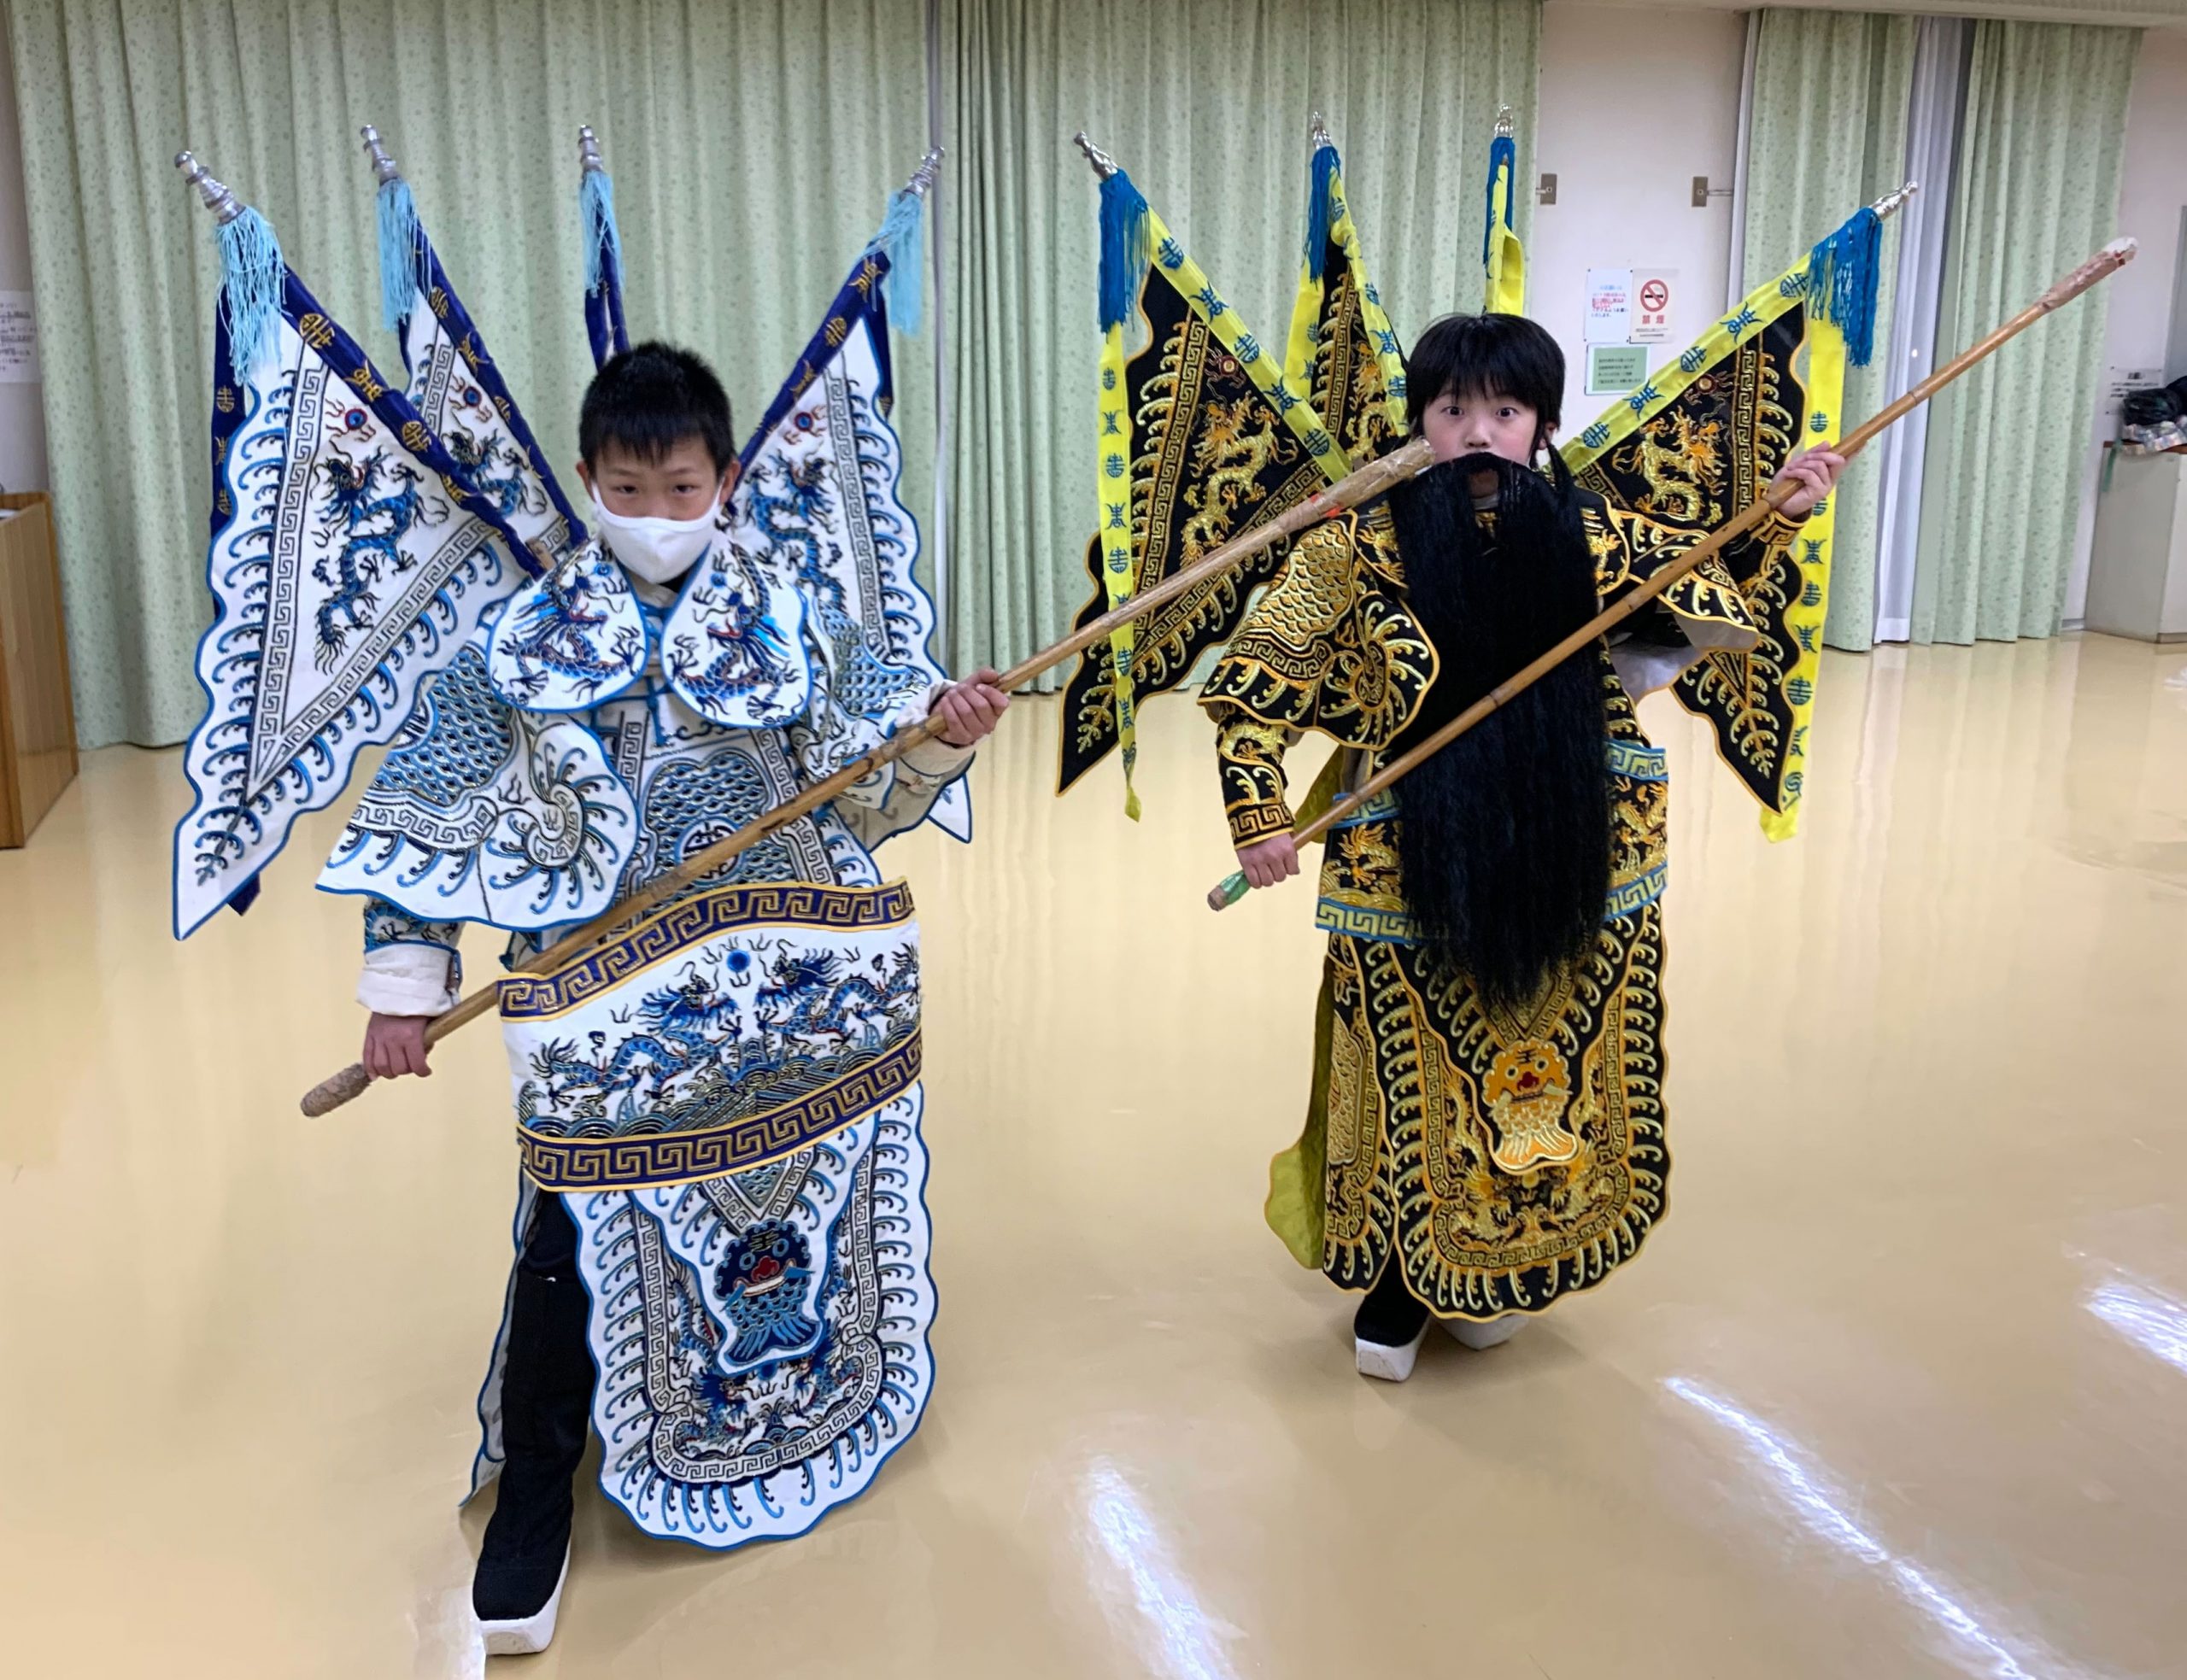 こどものための京劇教室「世田谷こども京劇団」の雰囲気がわかる写真